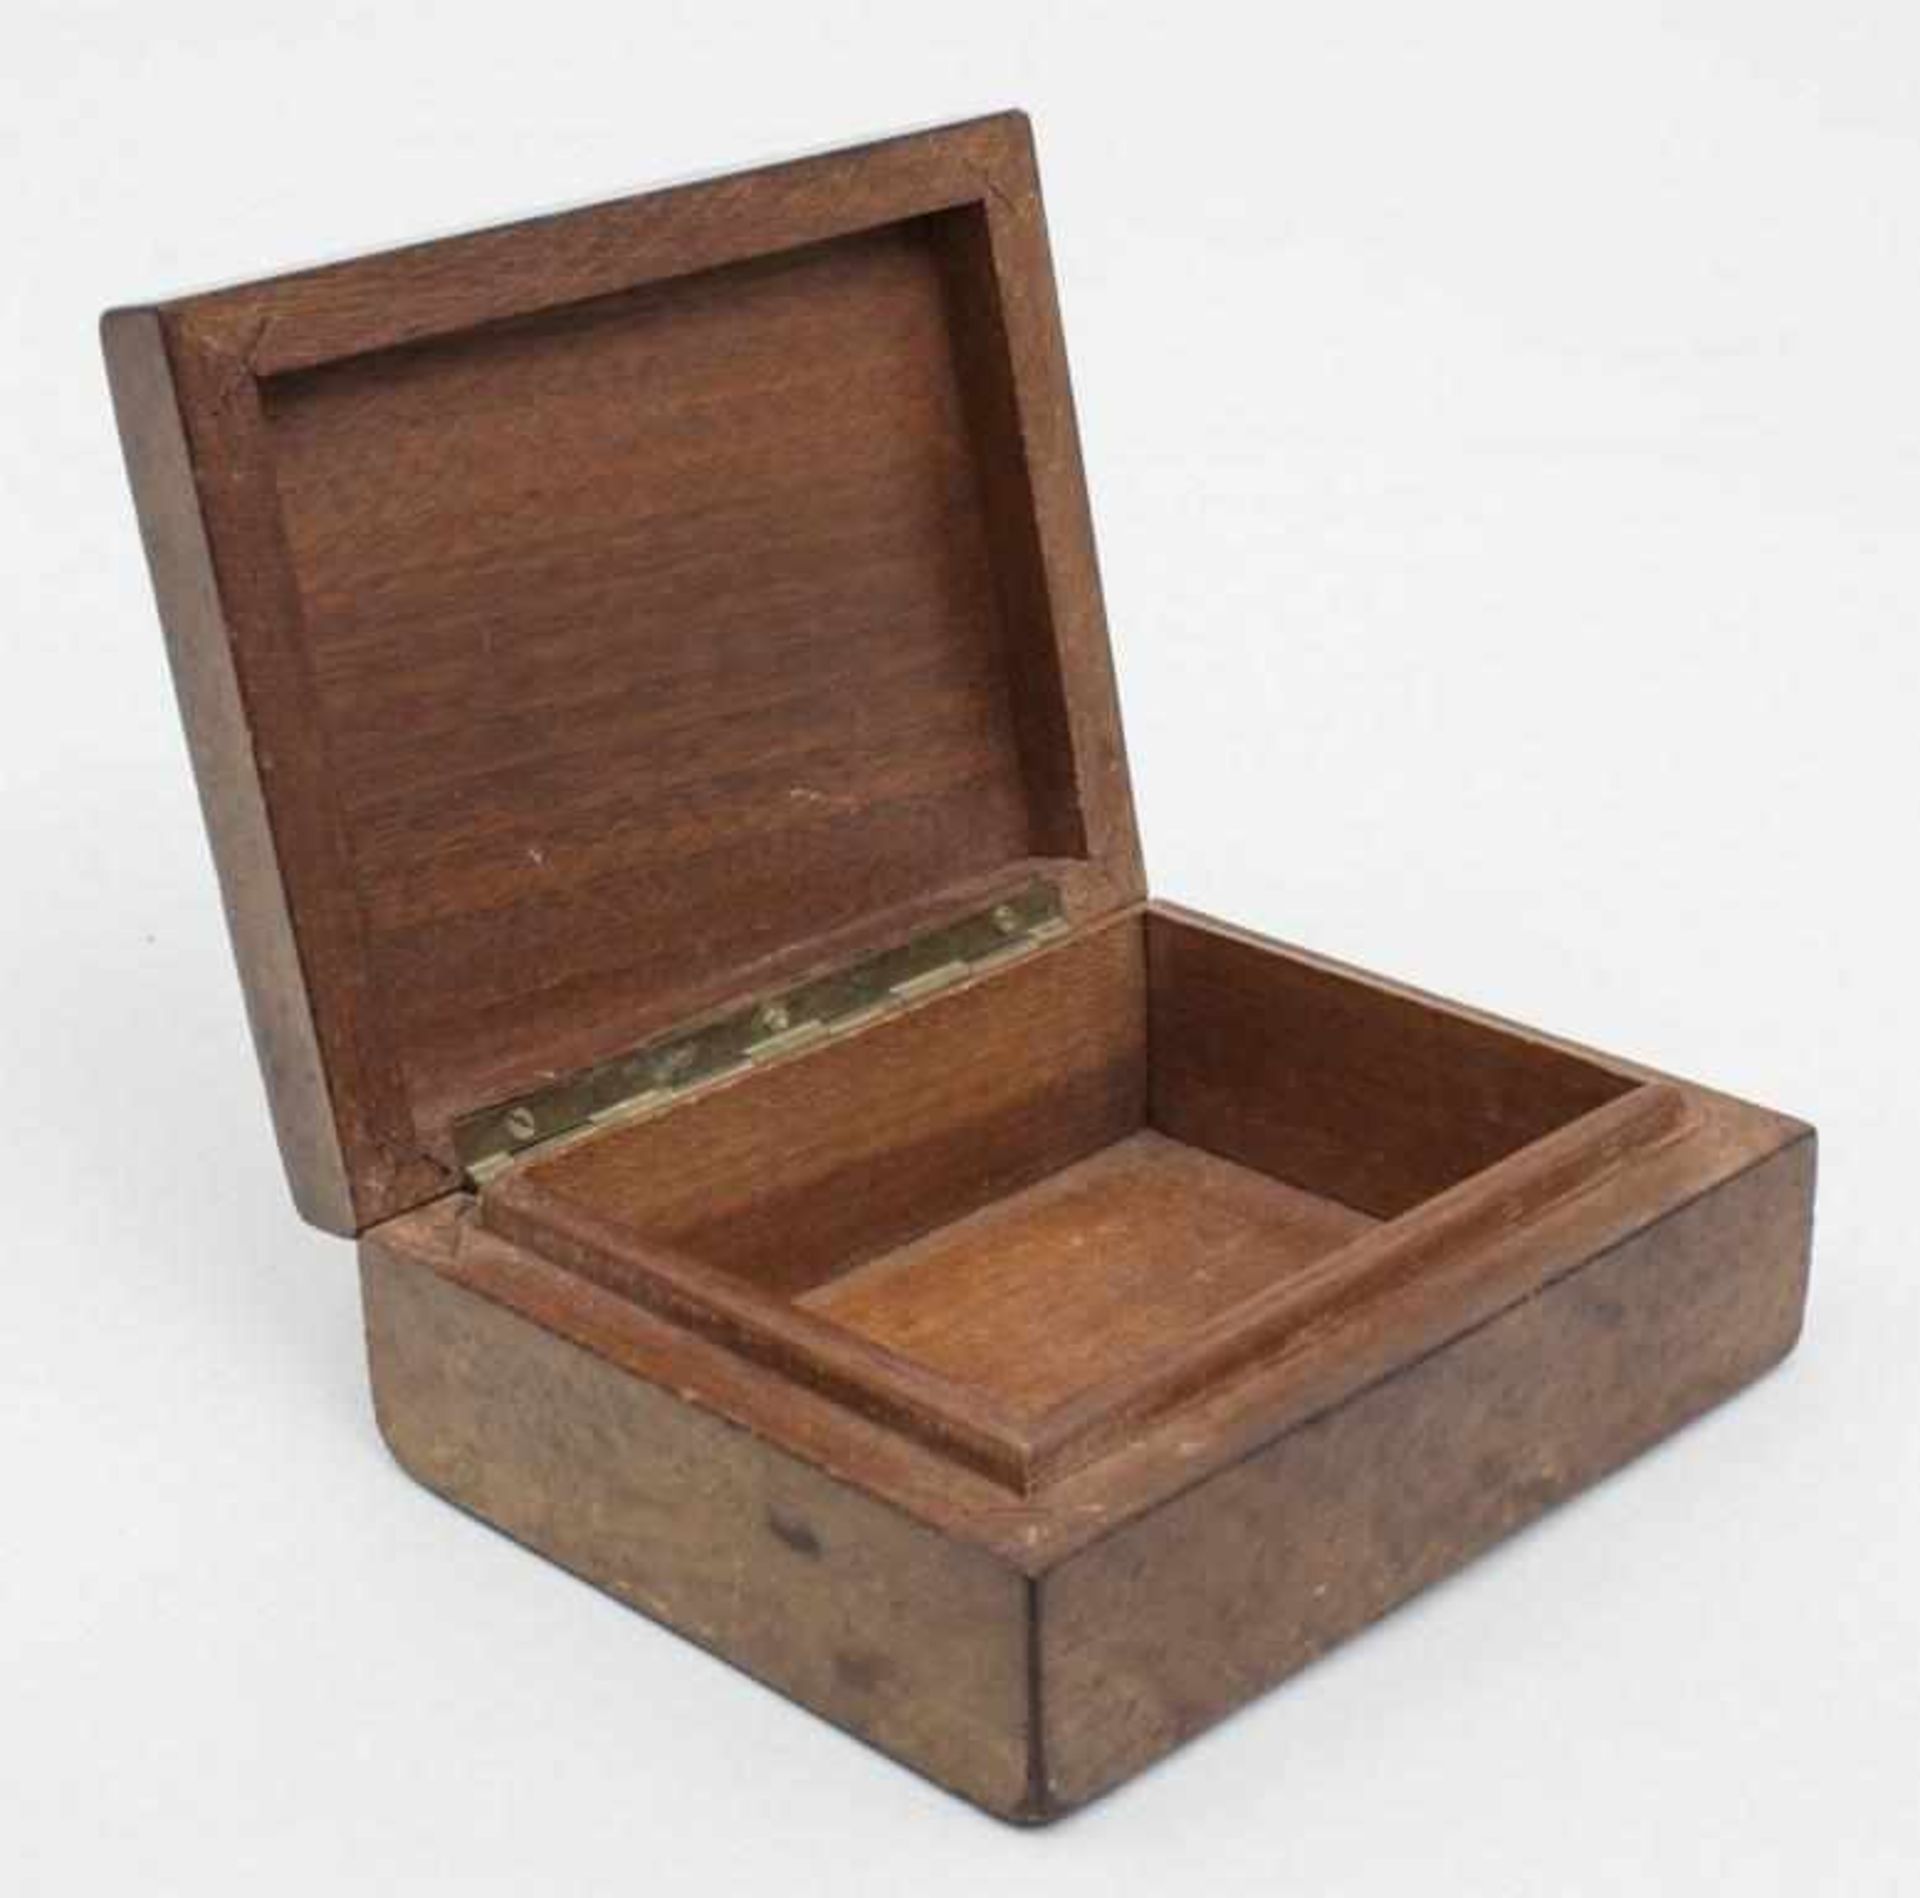 Zigarettendose/Cigarette Case, Friedrich II, deutsch, 1936rechteckige Scharnierdeckeldose aus - Bild 3 aus 3